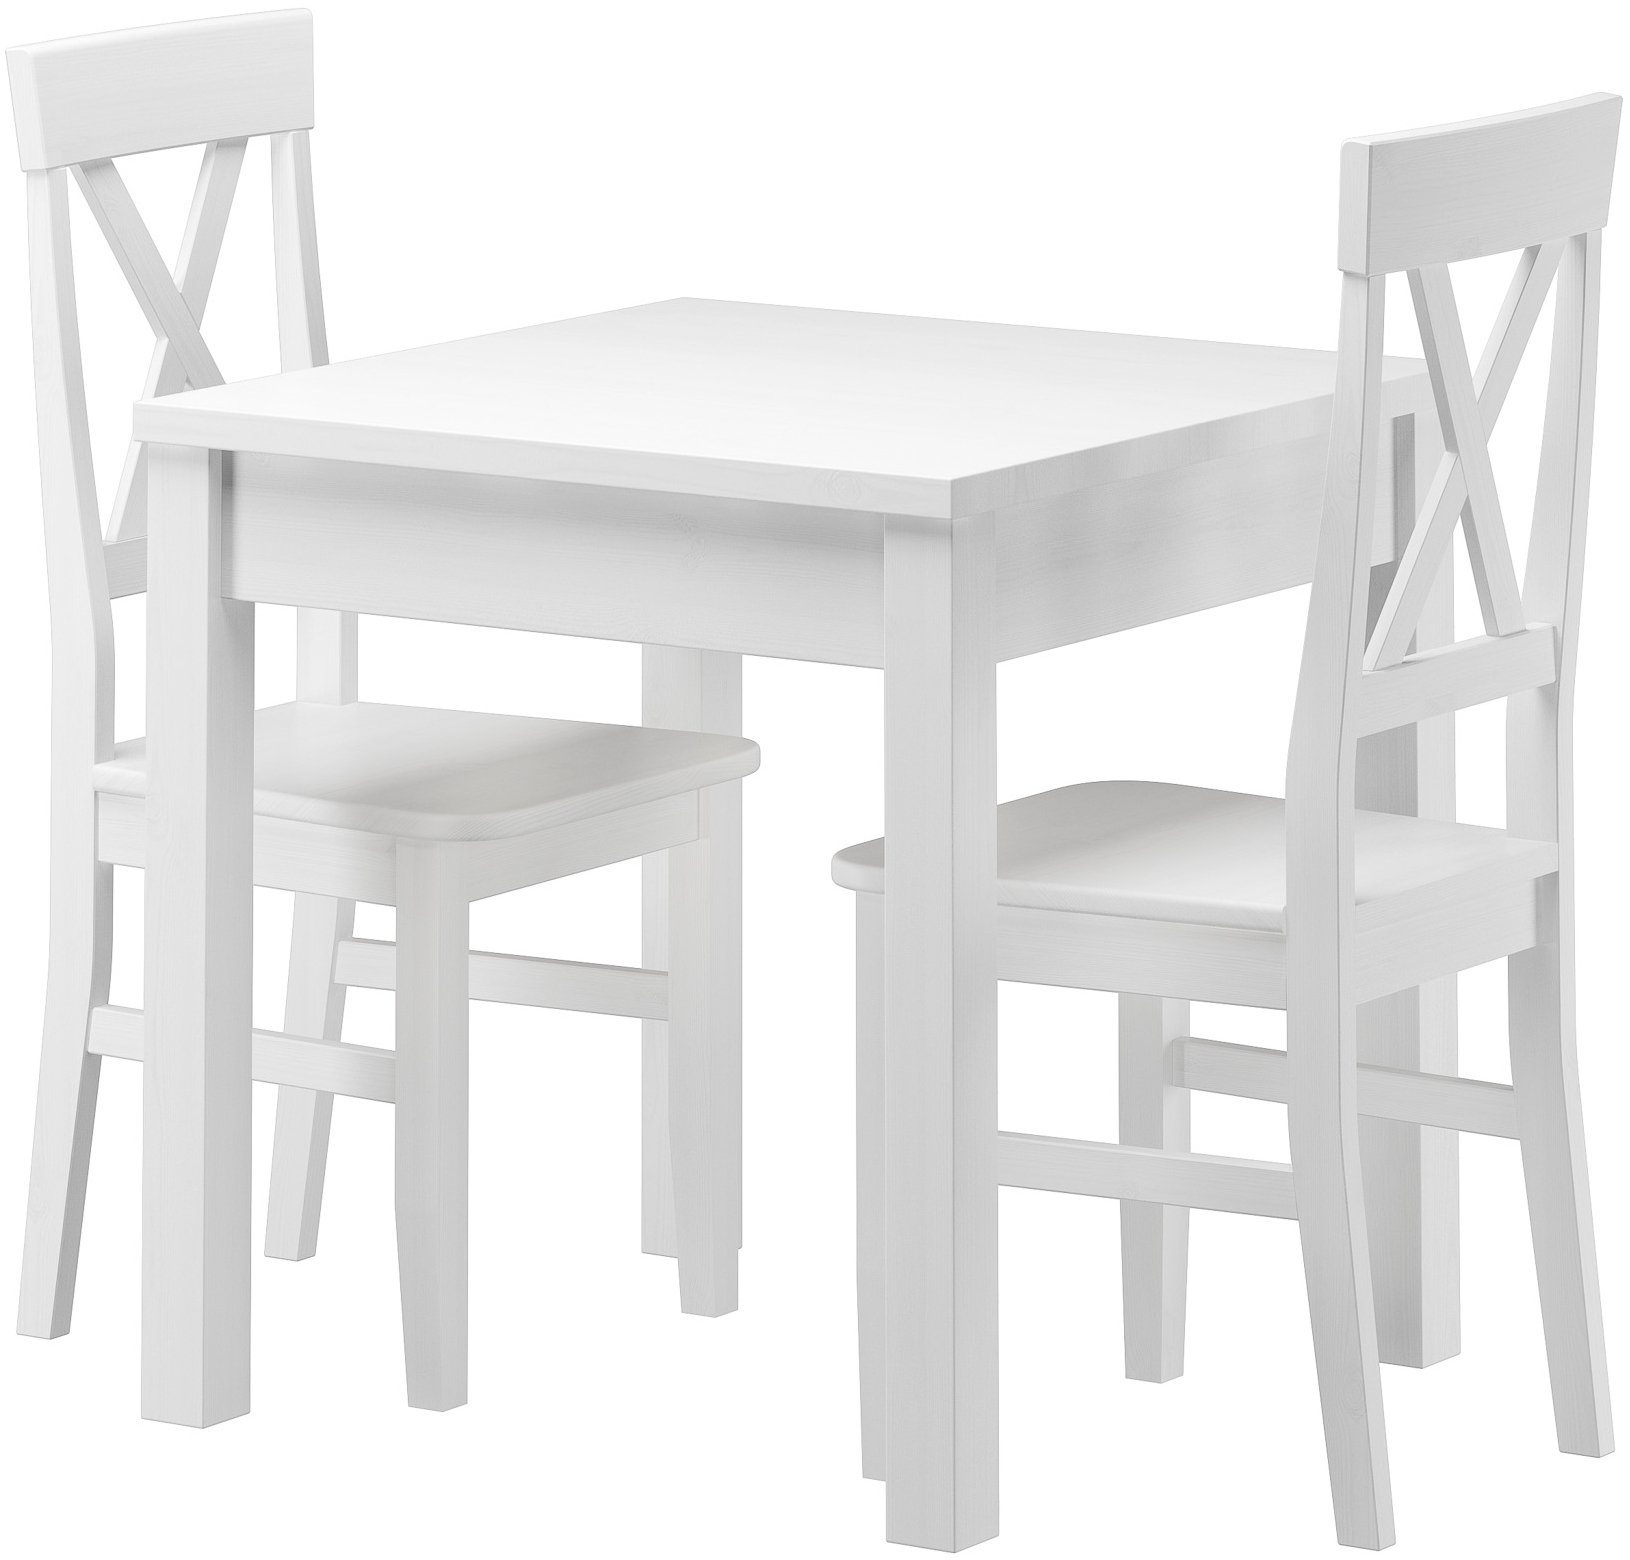 ERST-HOLZ Essgruppe Stilvolle Massivholz kleine Essgruppe waschweiß 2 Kiefer Tisch Stühle